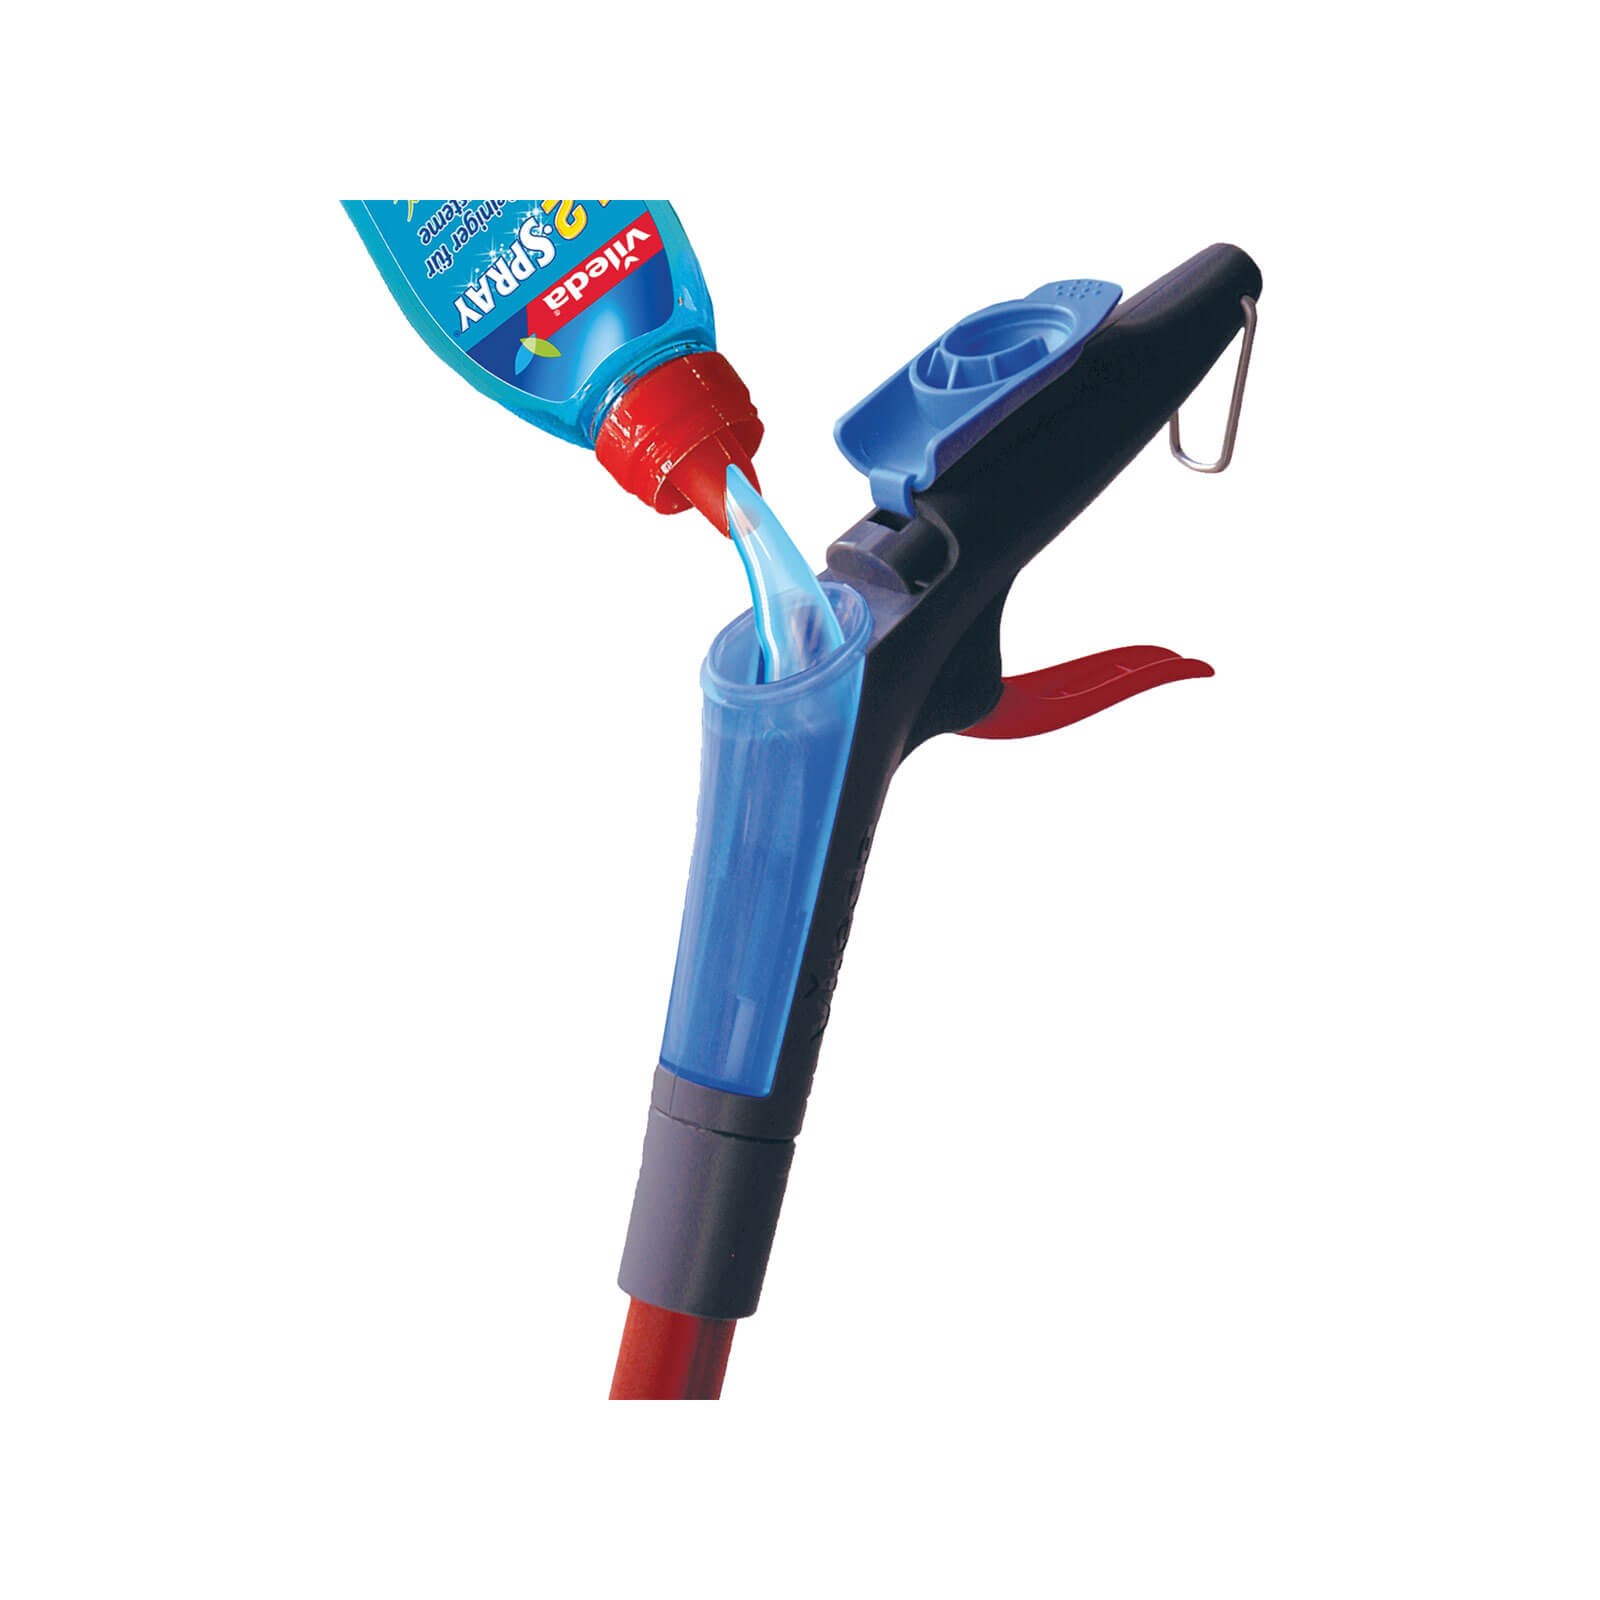 Vileda 140626 1-2 Microfibre Flat Spray Mop for sale online